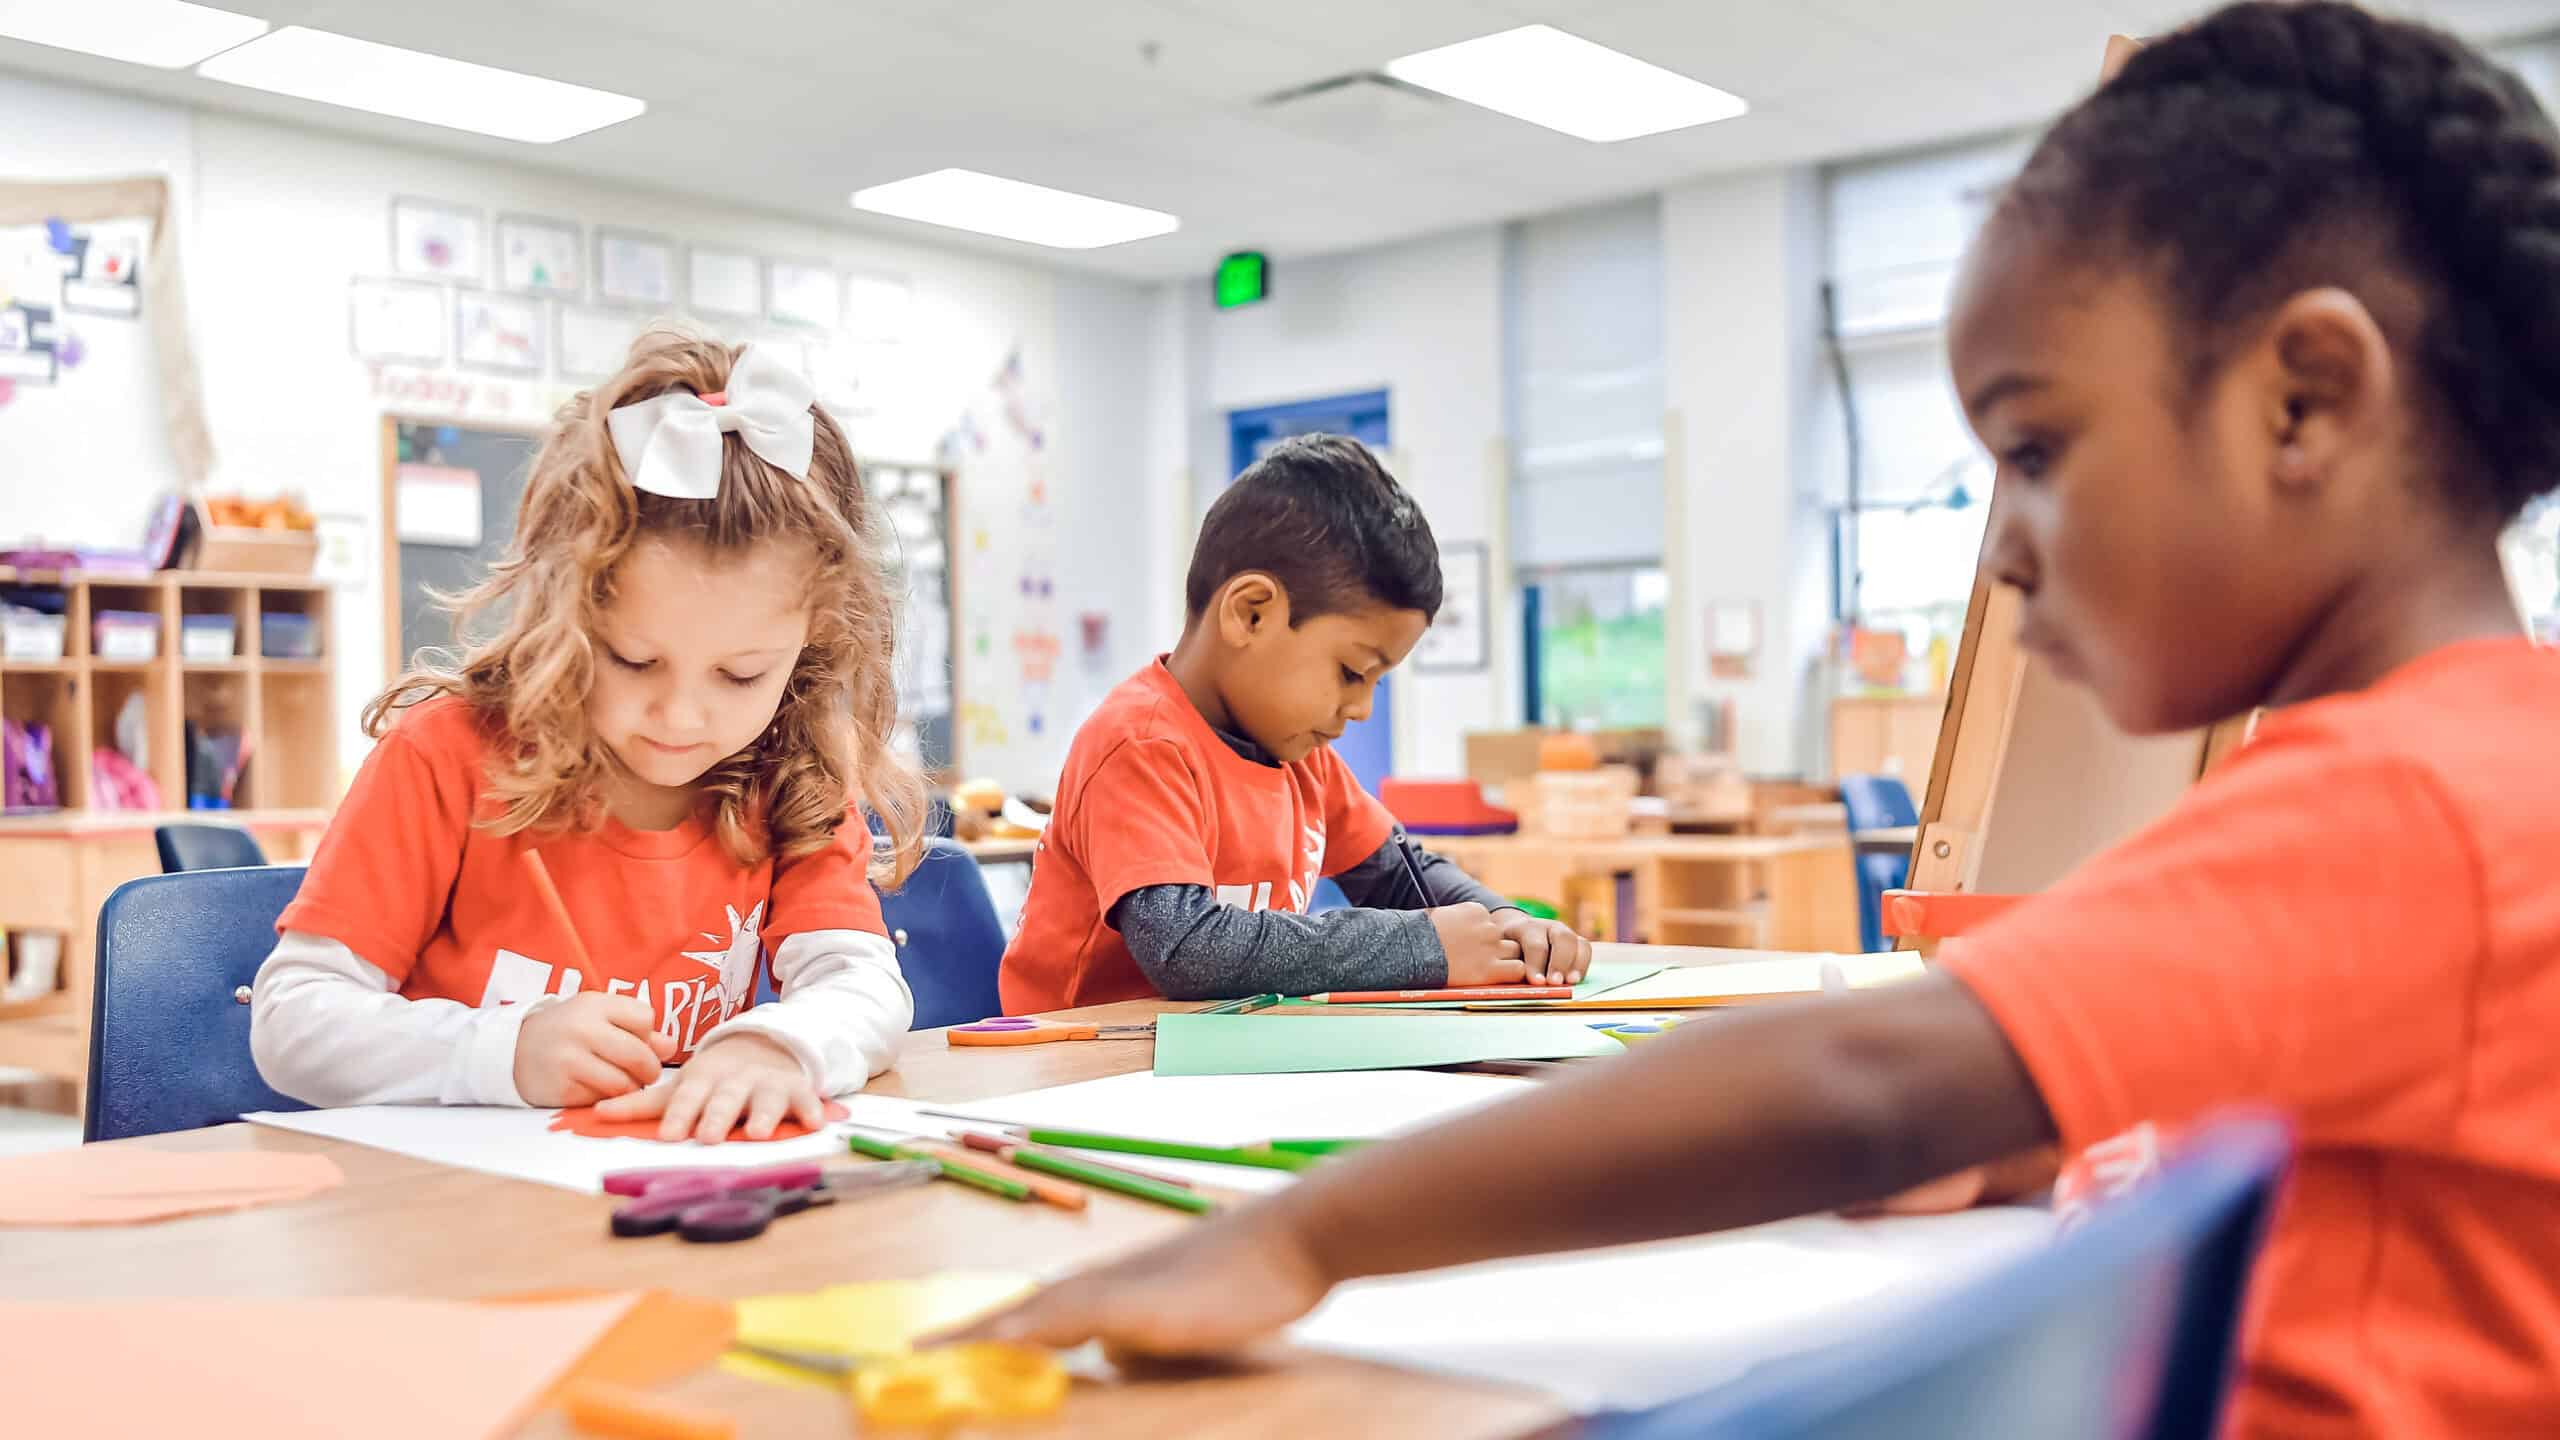 preschool children at desks in classroom